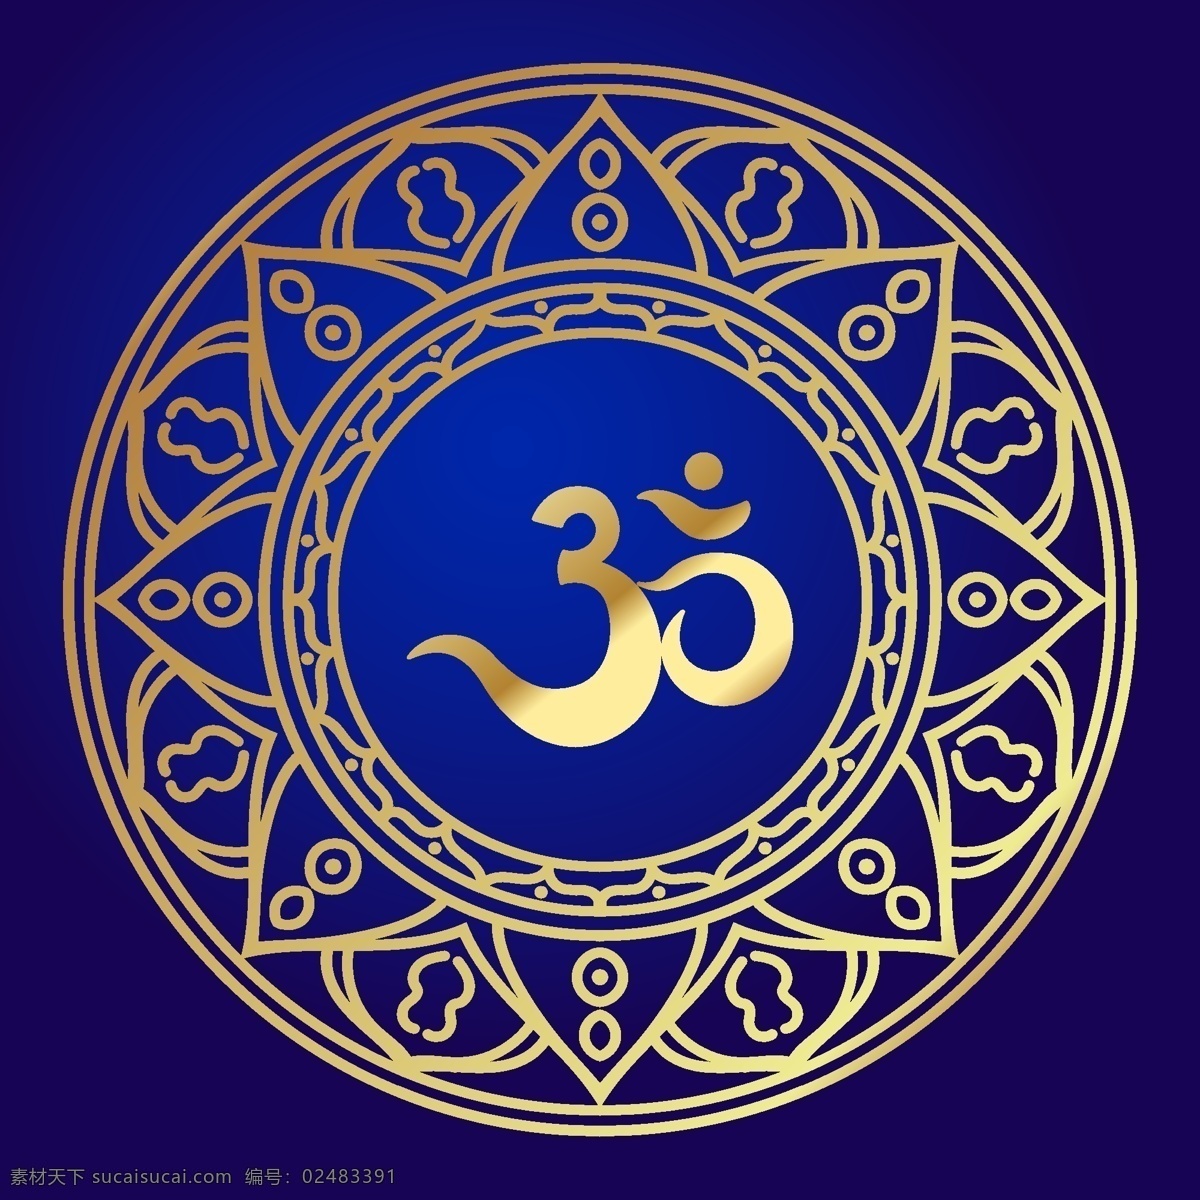 奥姆真理教 印度 圣 音 原始 咒语 权力 话语 宗教 向量 符号 印度教 瑜伽 冥想 精神 哲学 装饰